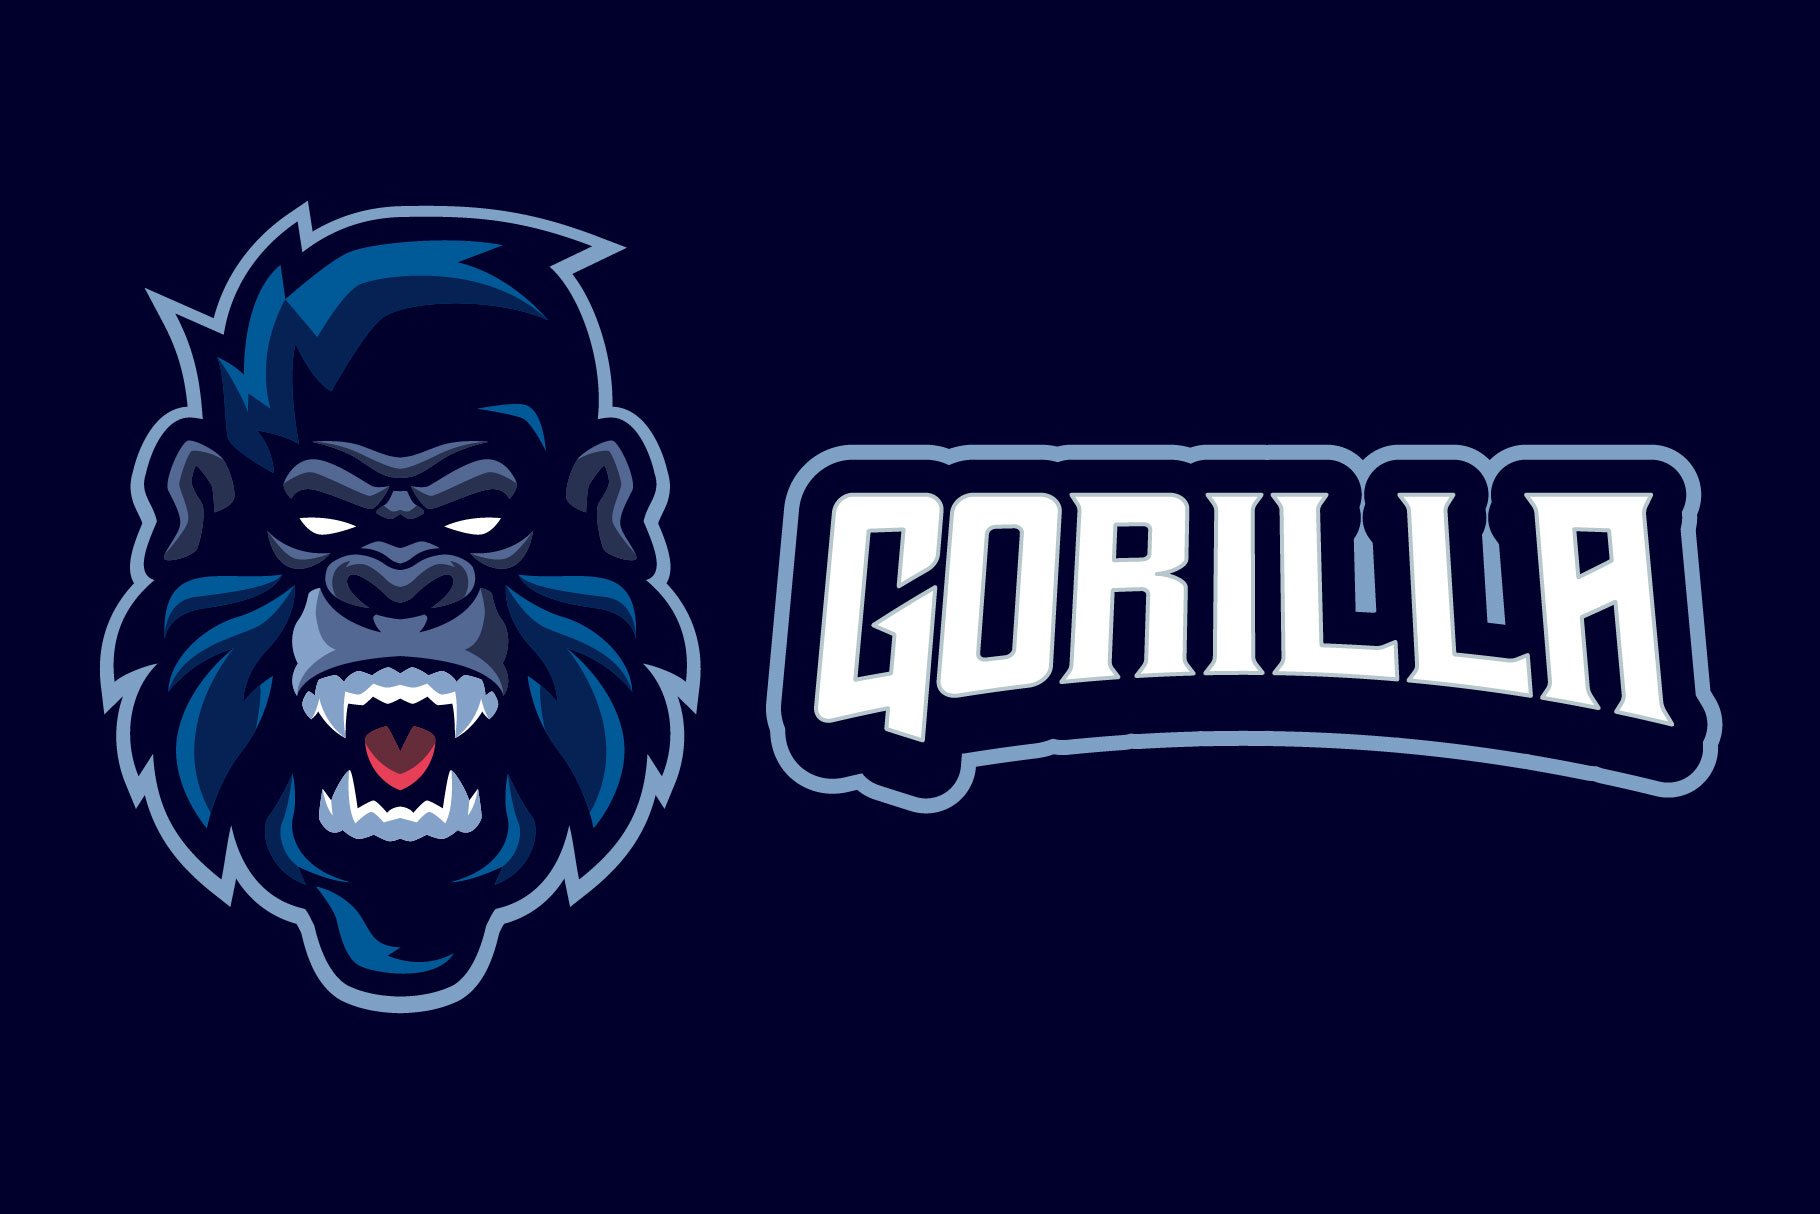 gorilla esports logo templates preview 3 152